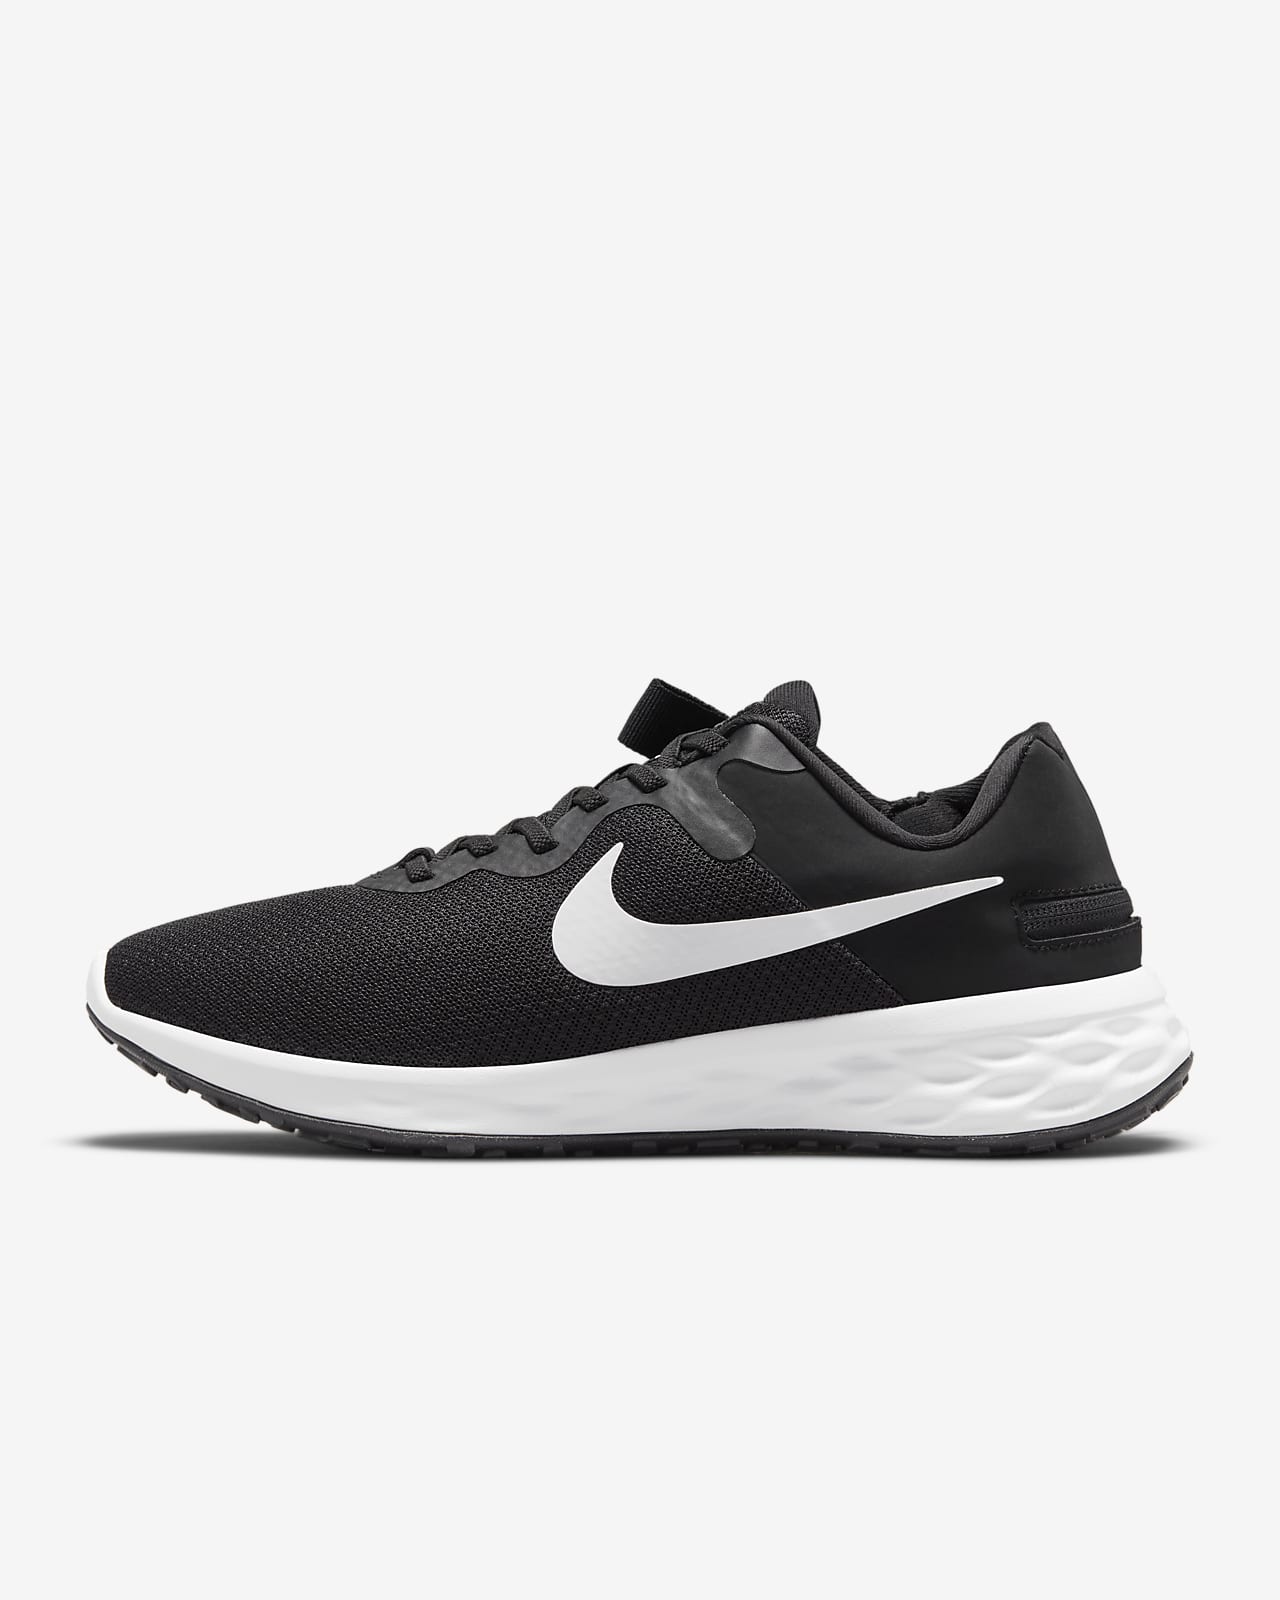 Ανδρικά παπούτσια για τρέξιμο σε δρόμο με εύκολη εφαρμογή/αφαίρεση Nike Revolution 6 FlyEase